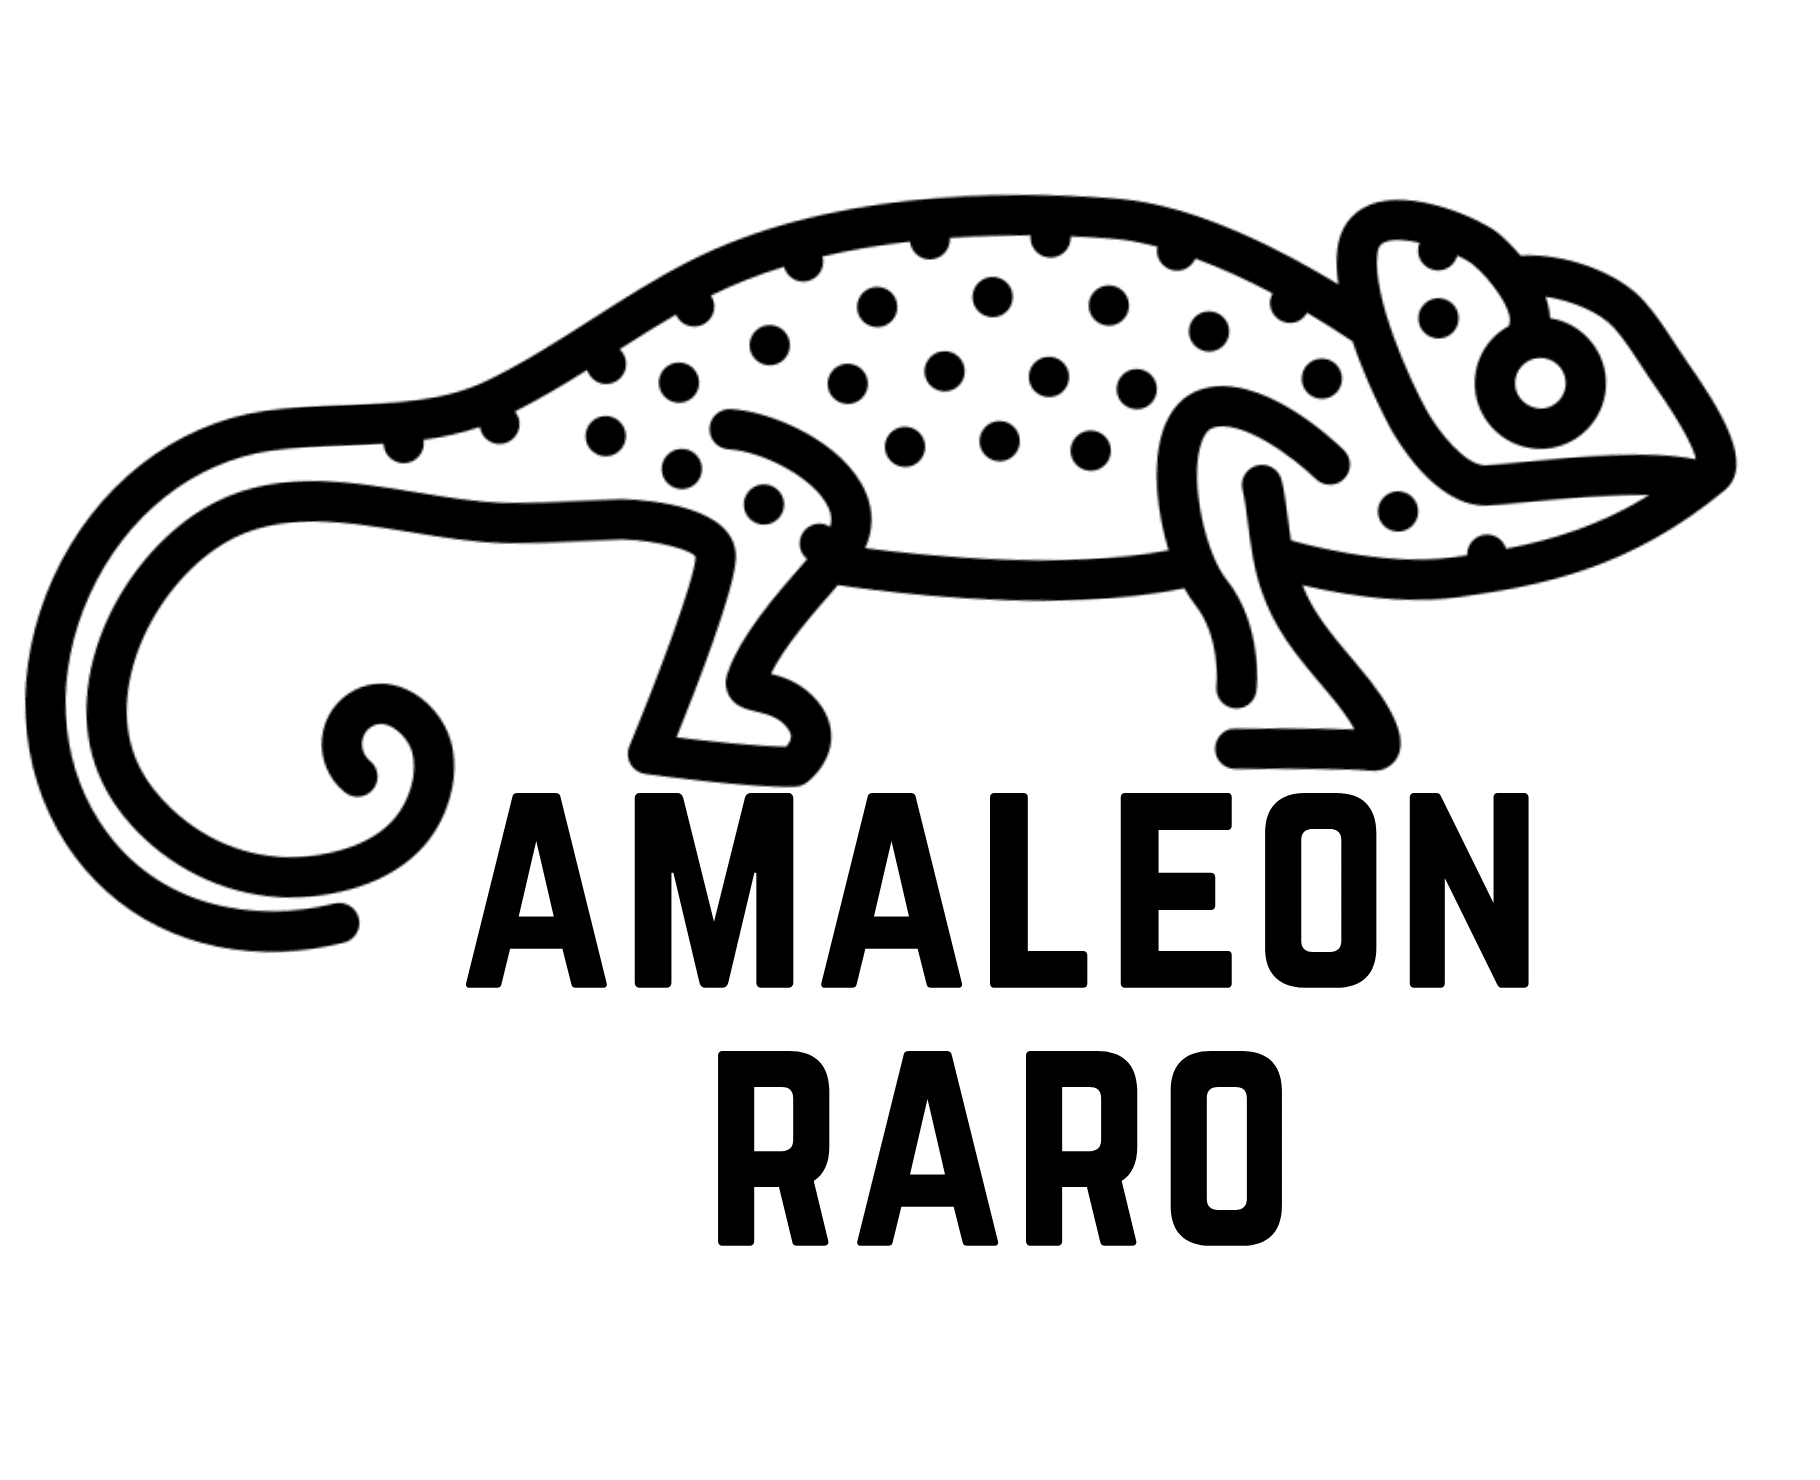 CamaleónRaro Logo